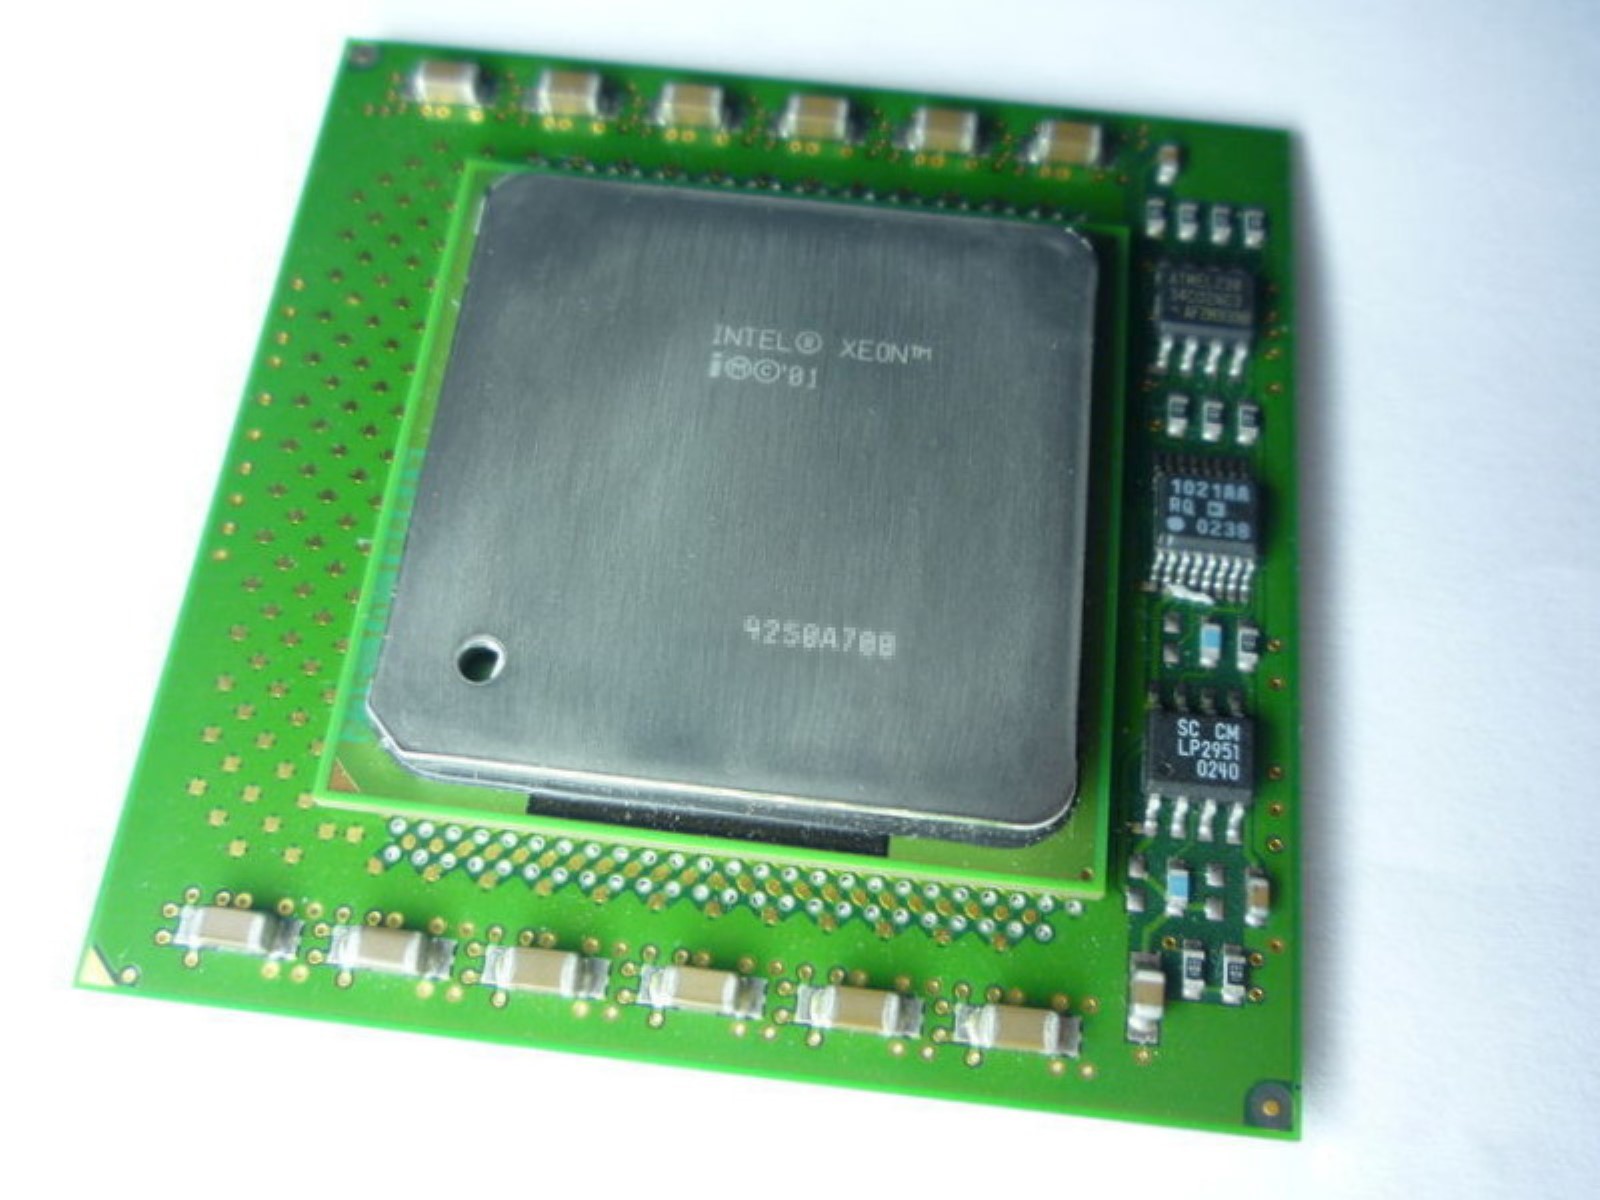 Intel Xeon 603 cpu